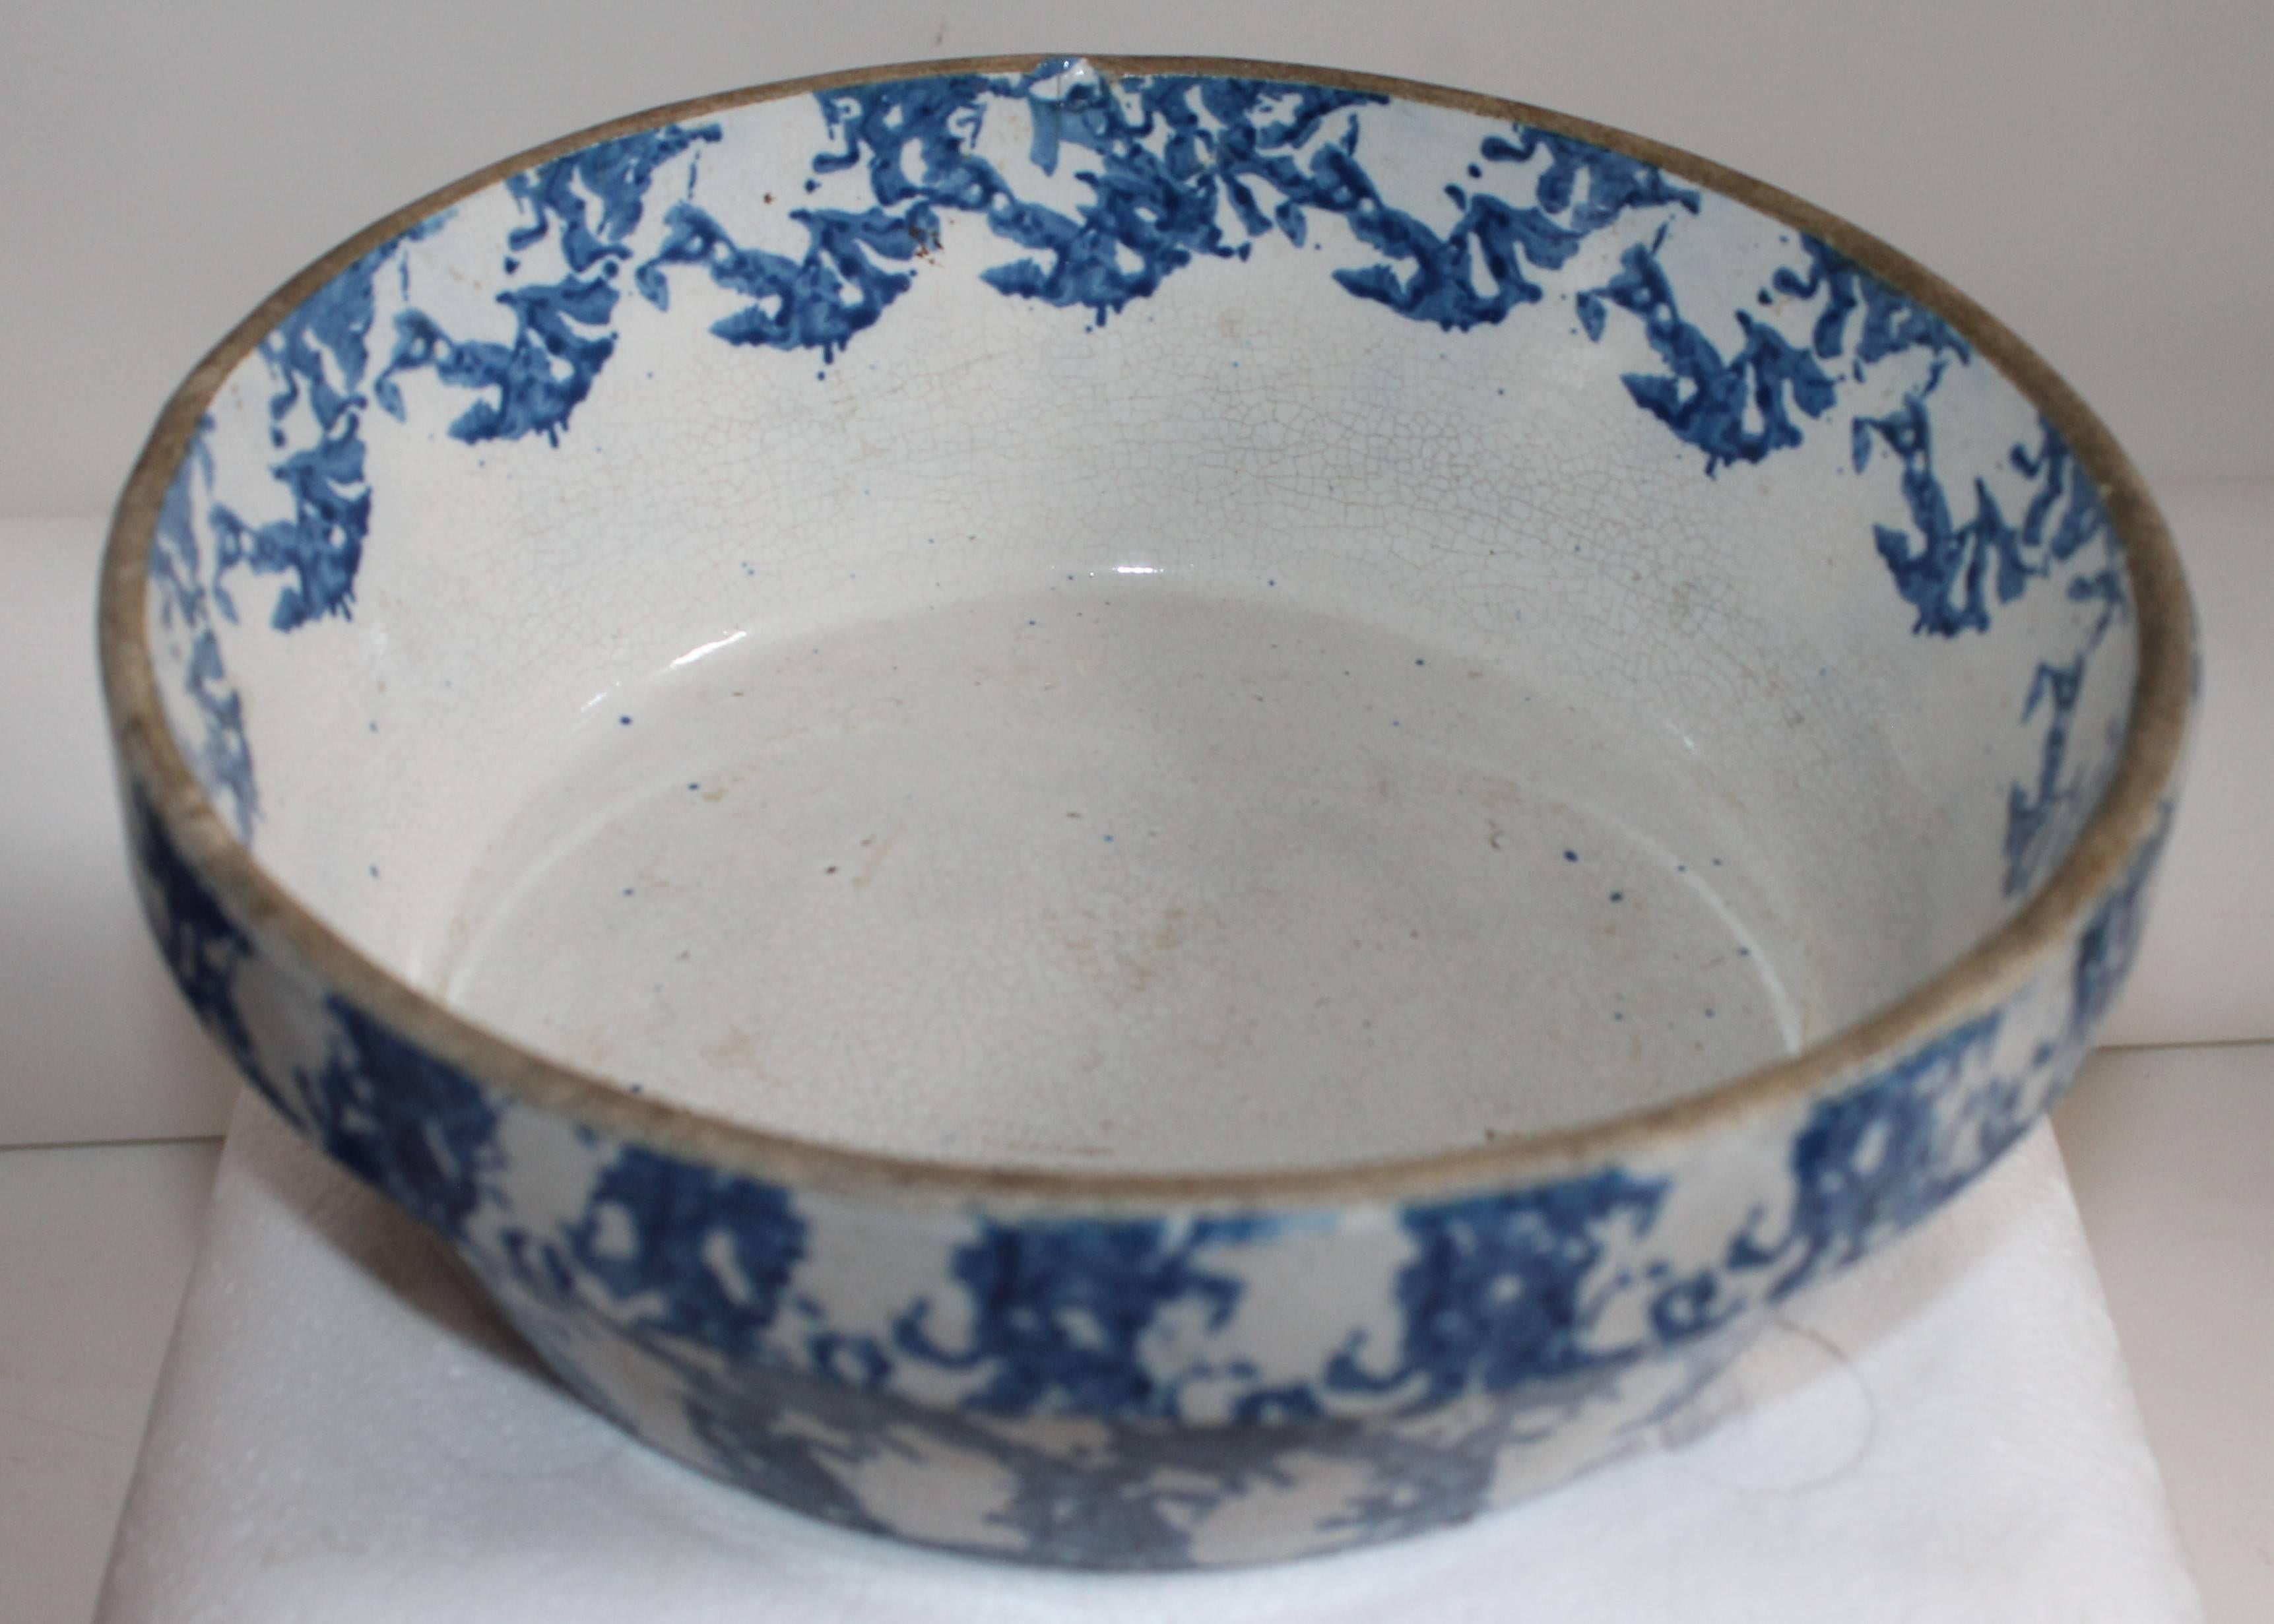 19th century porcelain